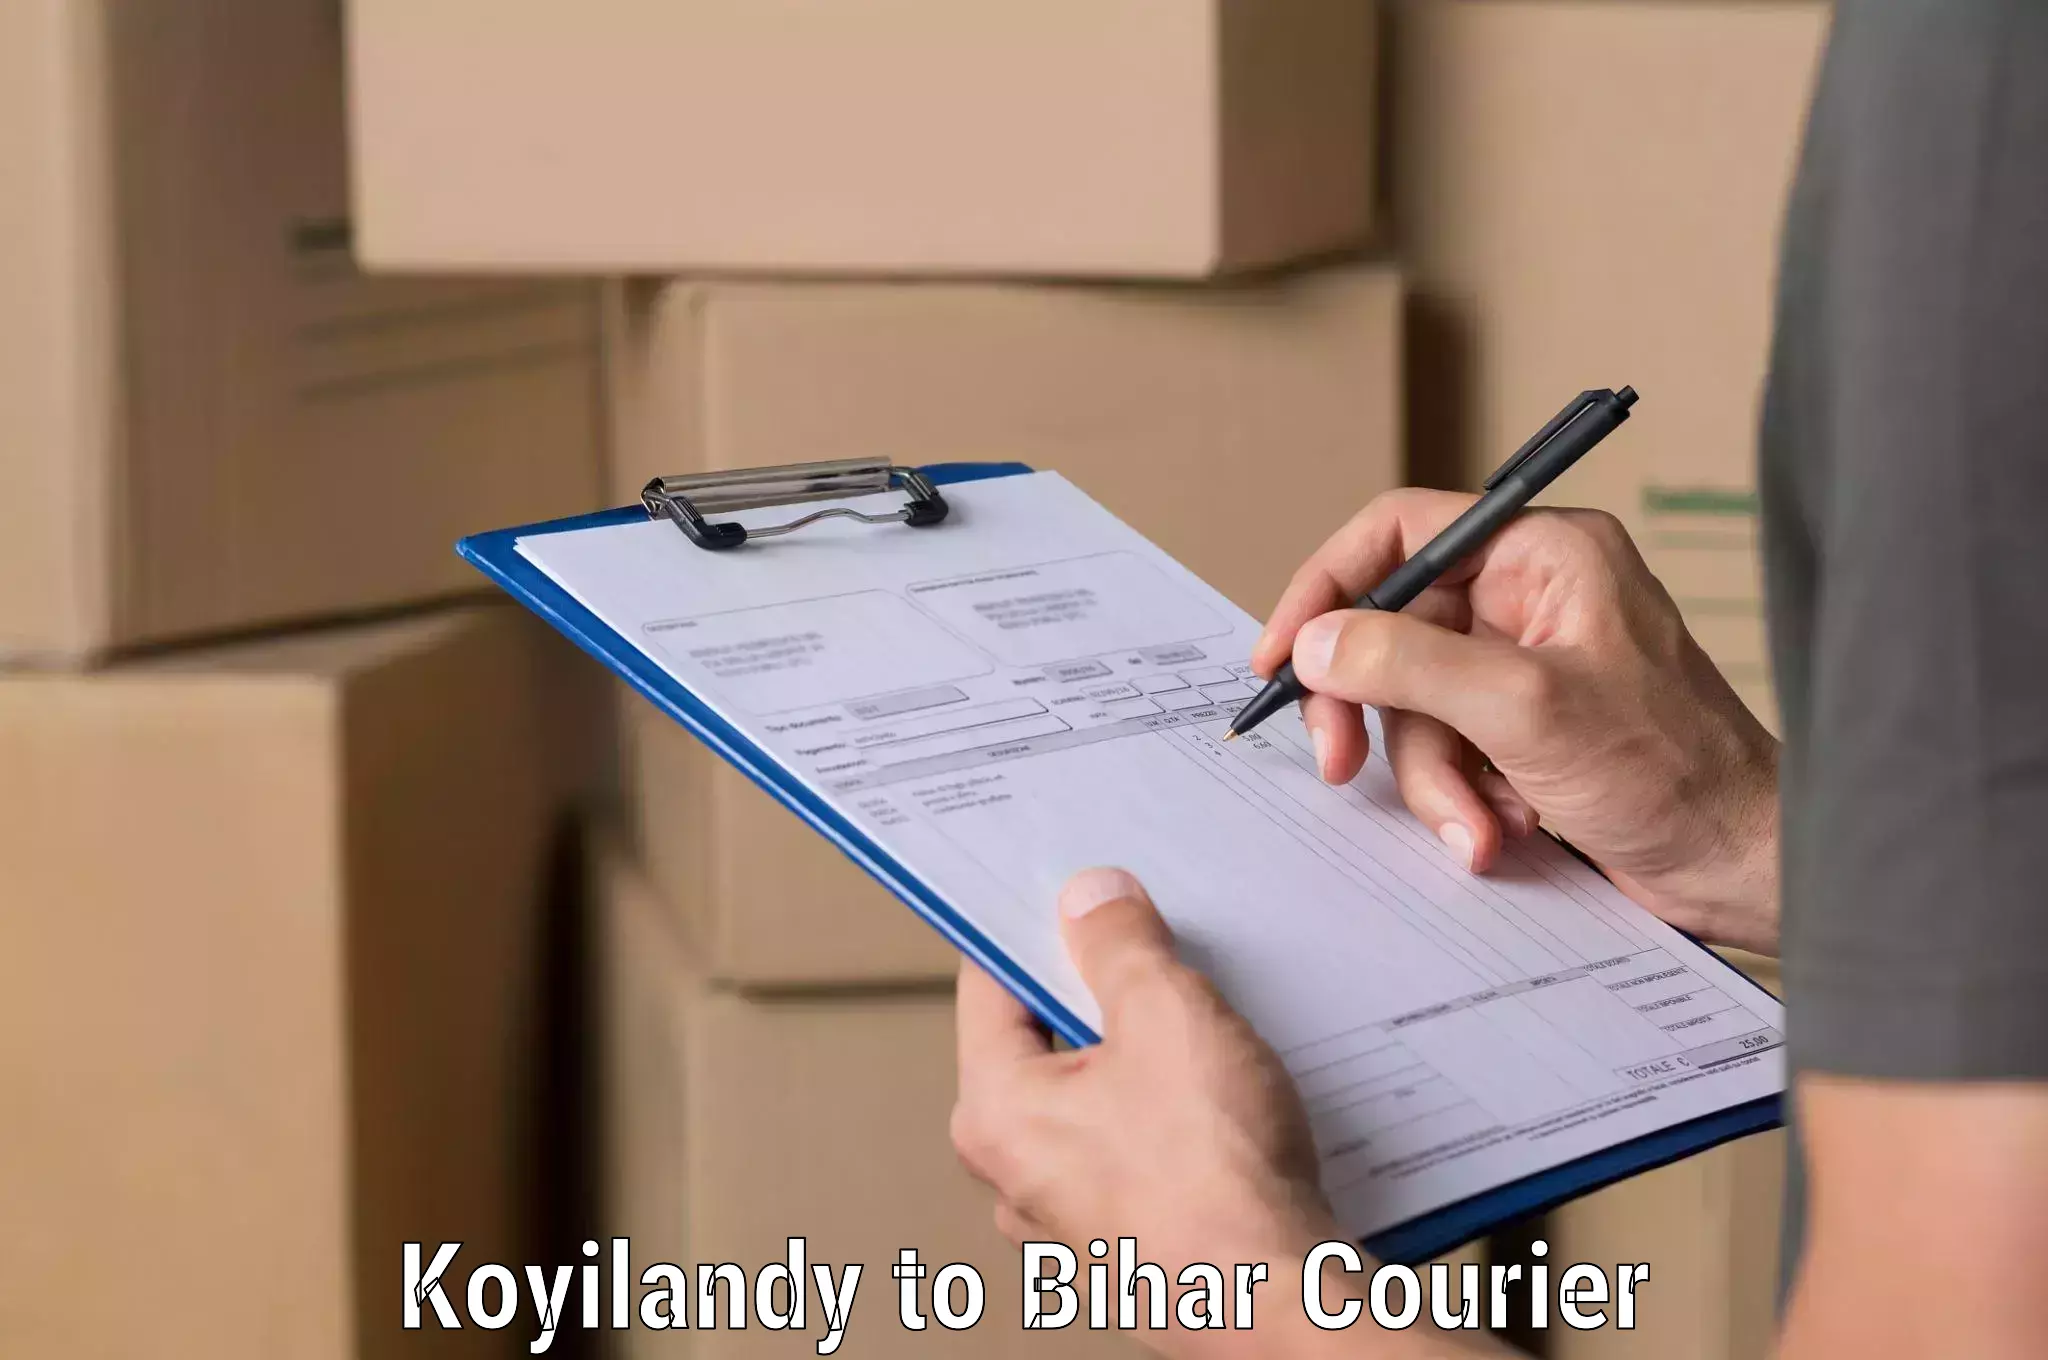 Premium courier services Koyilandy to Bhagalpur